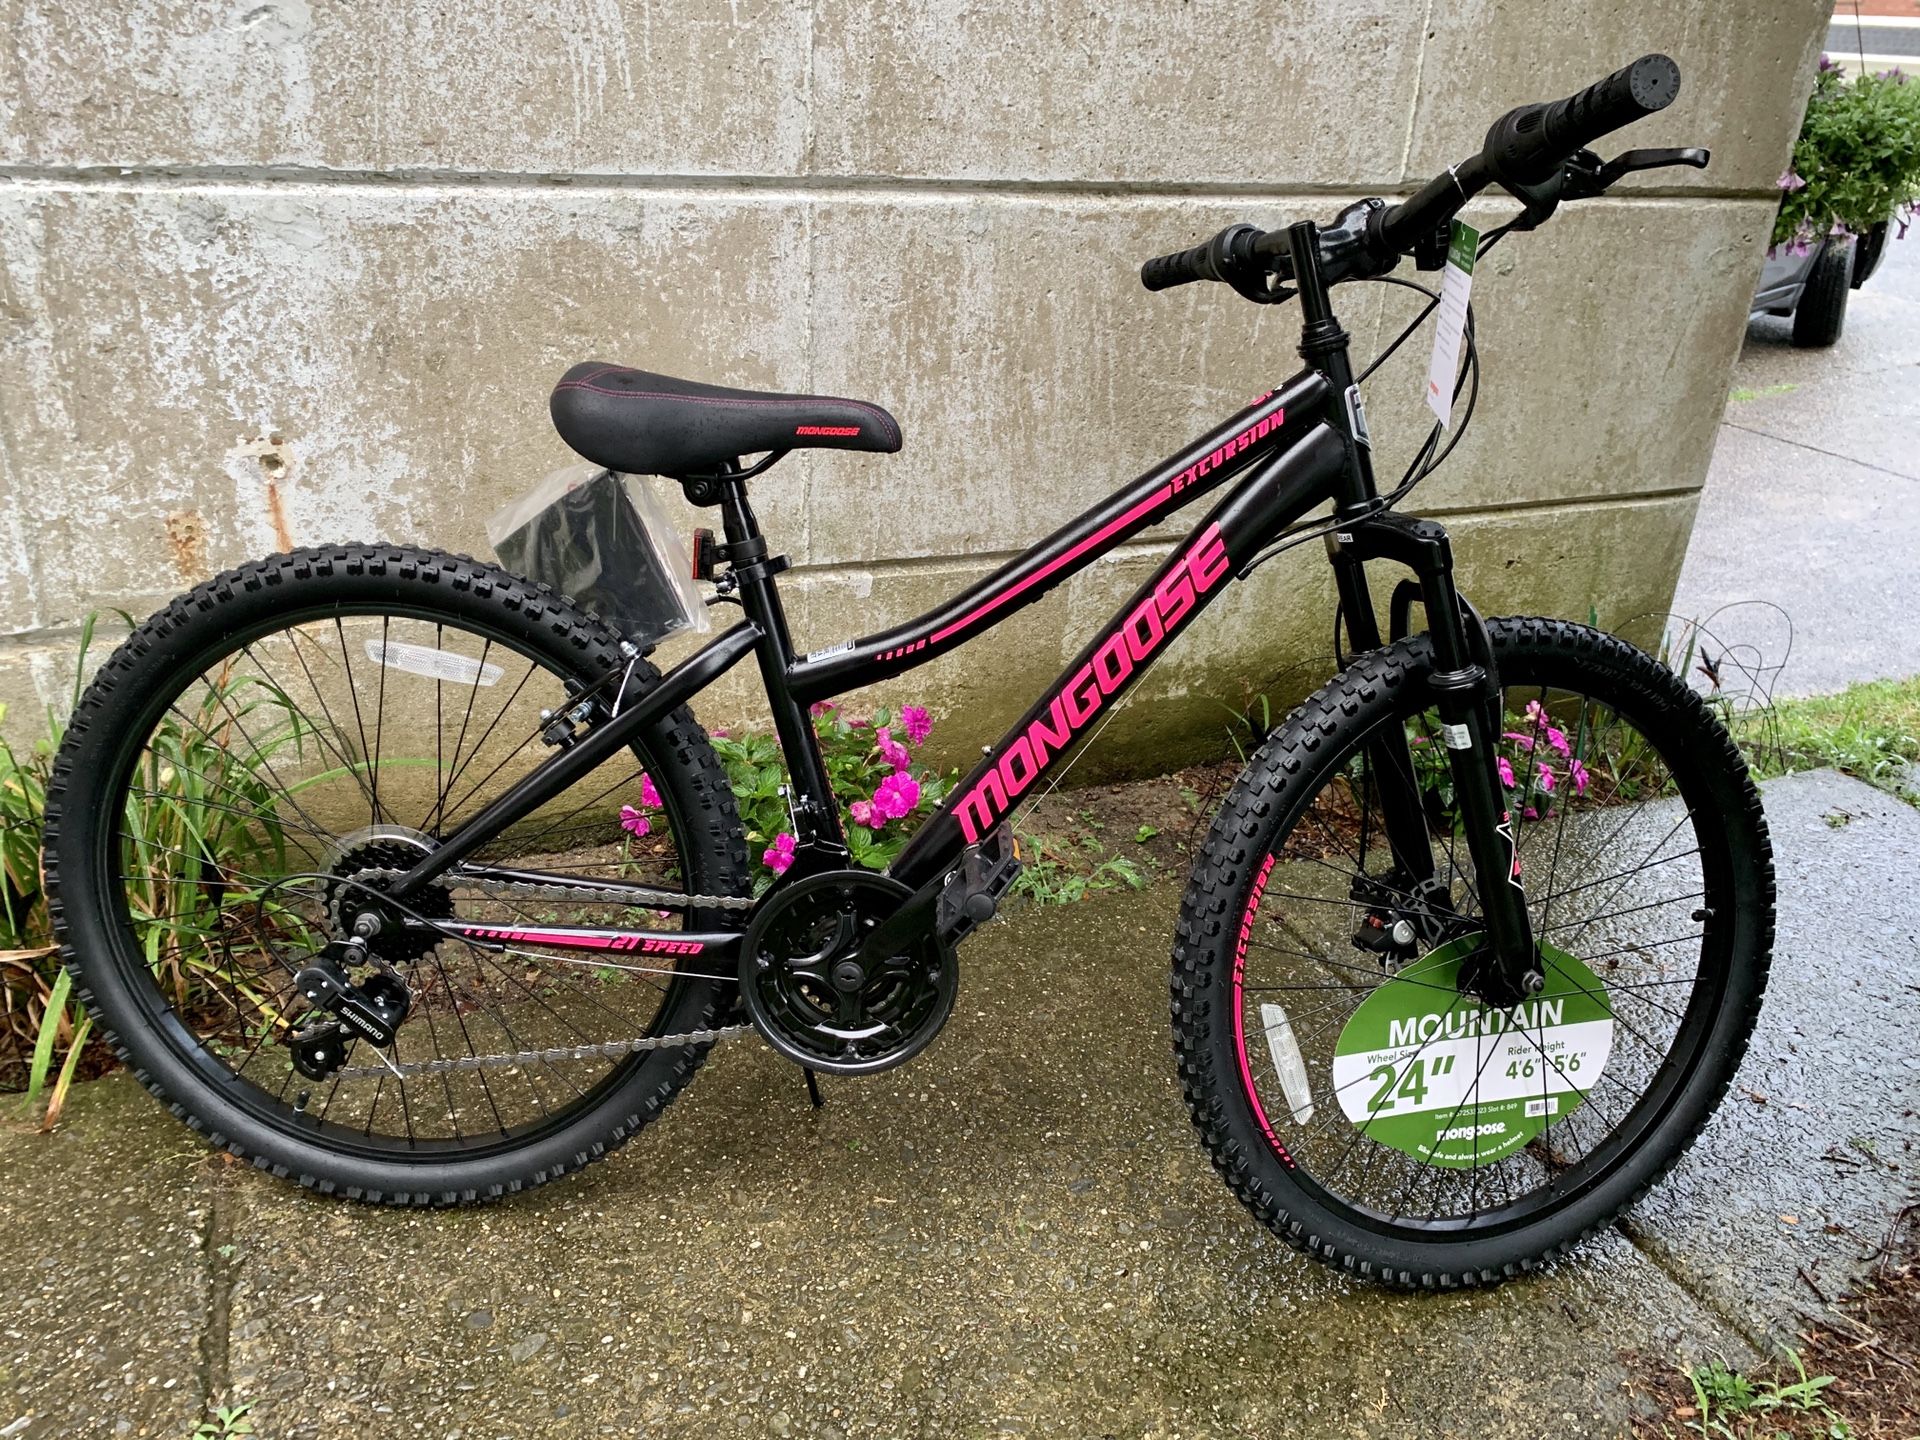 Brand New 24” Mongoose Mountain Bike. Girls ladies bicycle